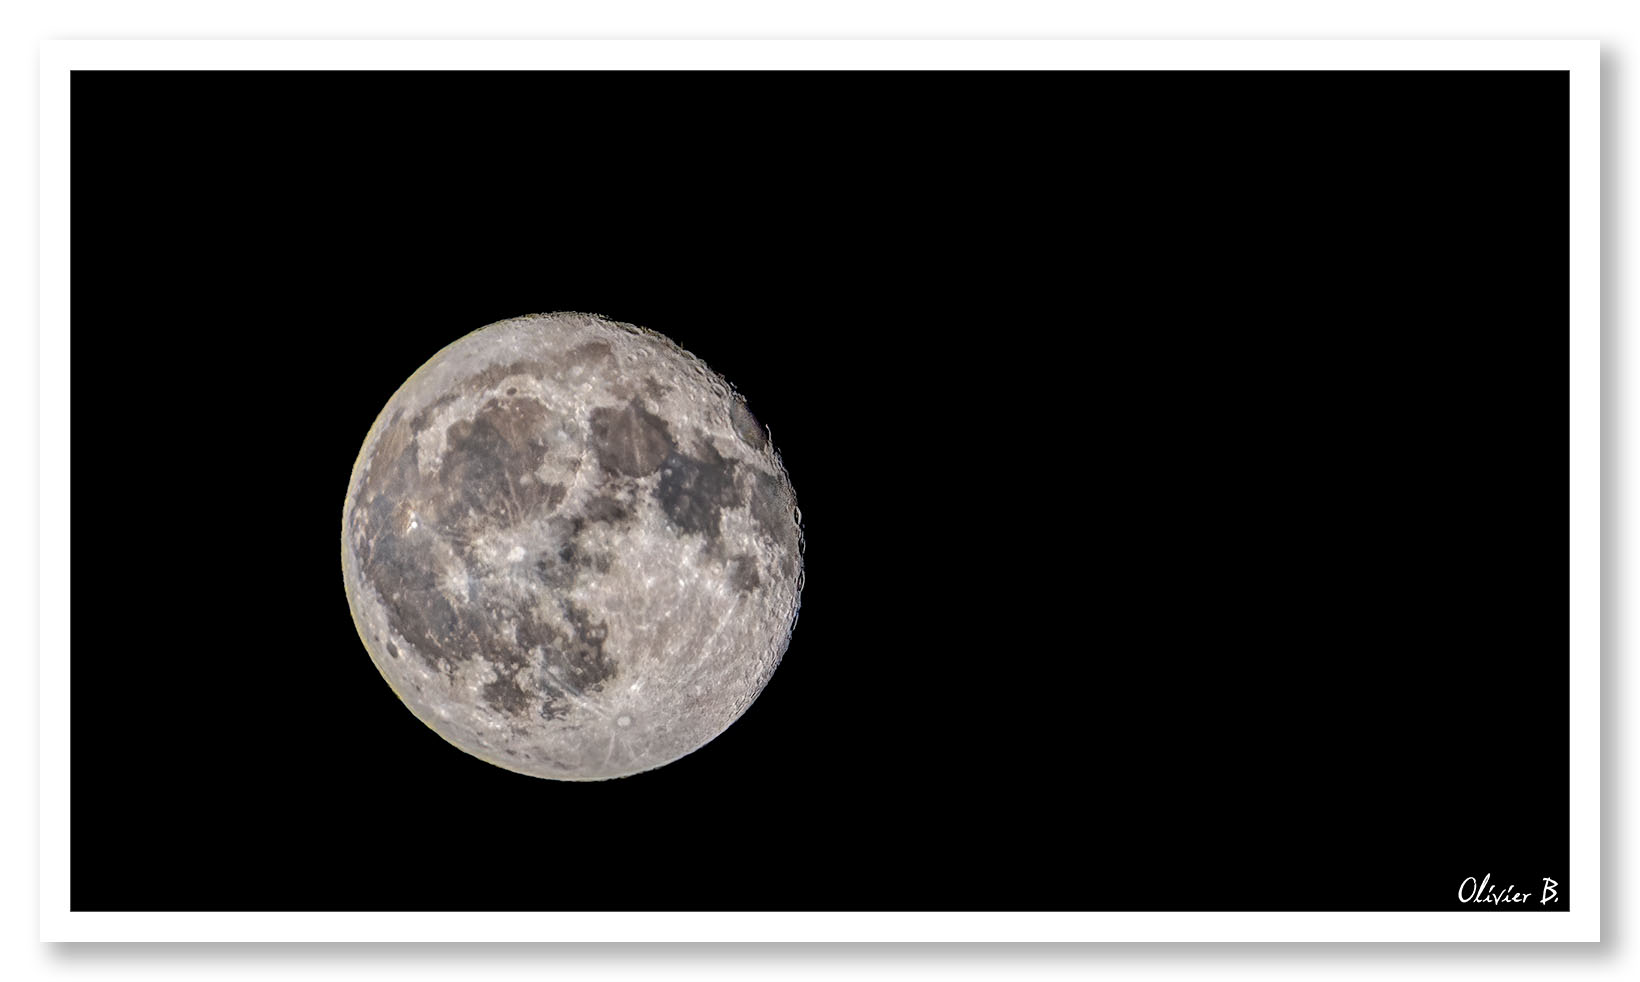 Vue spectaculaire de la lune avec ses cratères et le pôle sud, un délire lunaire